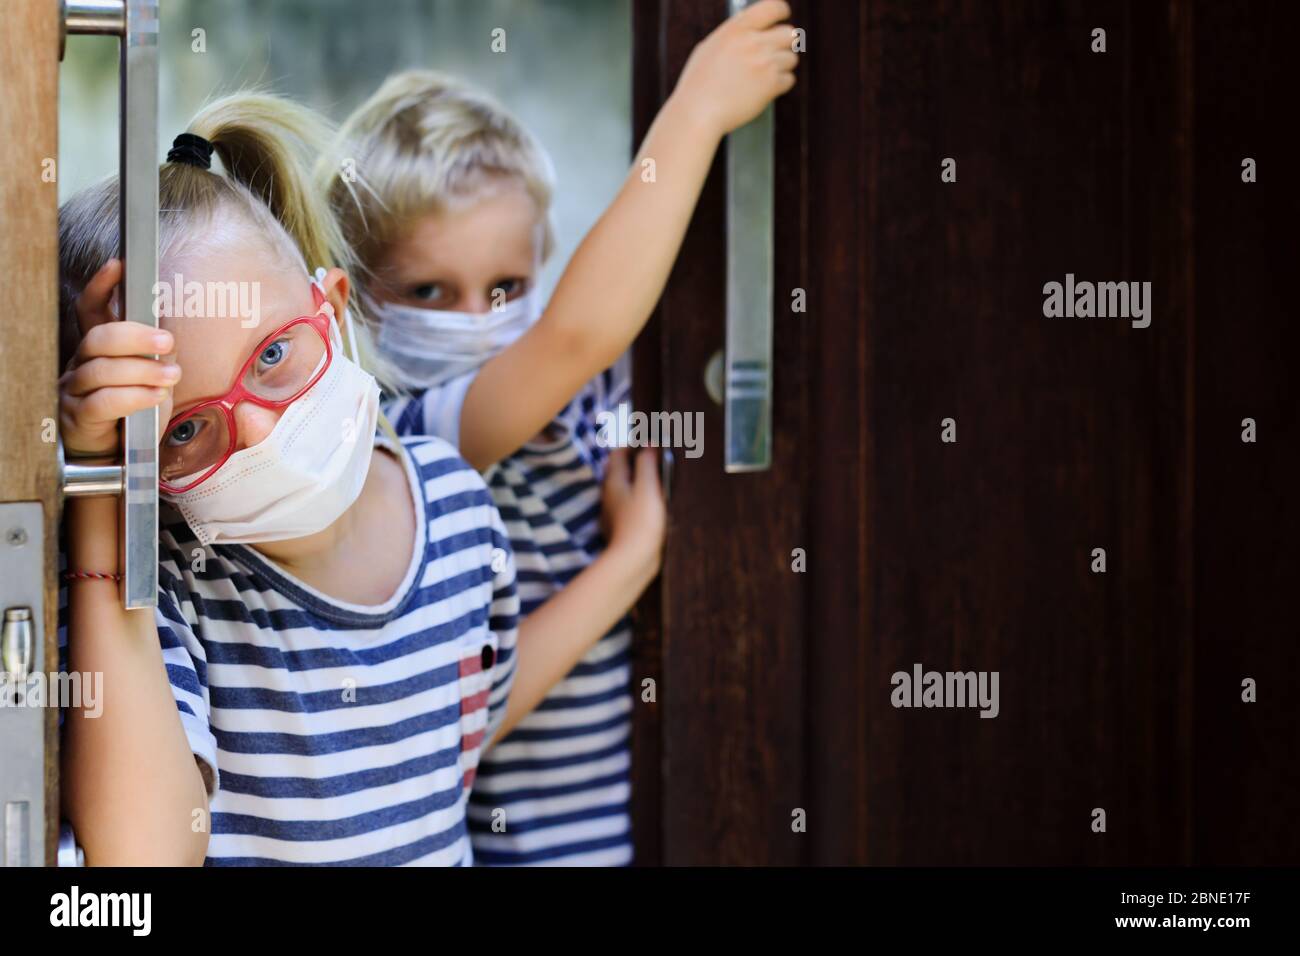 Les enfants ont l'air malheureux, déprimés après avoir séjourné à la maison en raison d'activités interdites dans la rue. Les enfants portant des masques médicaux sortent pour marcher dehors Banque D'Images